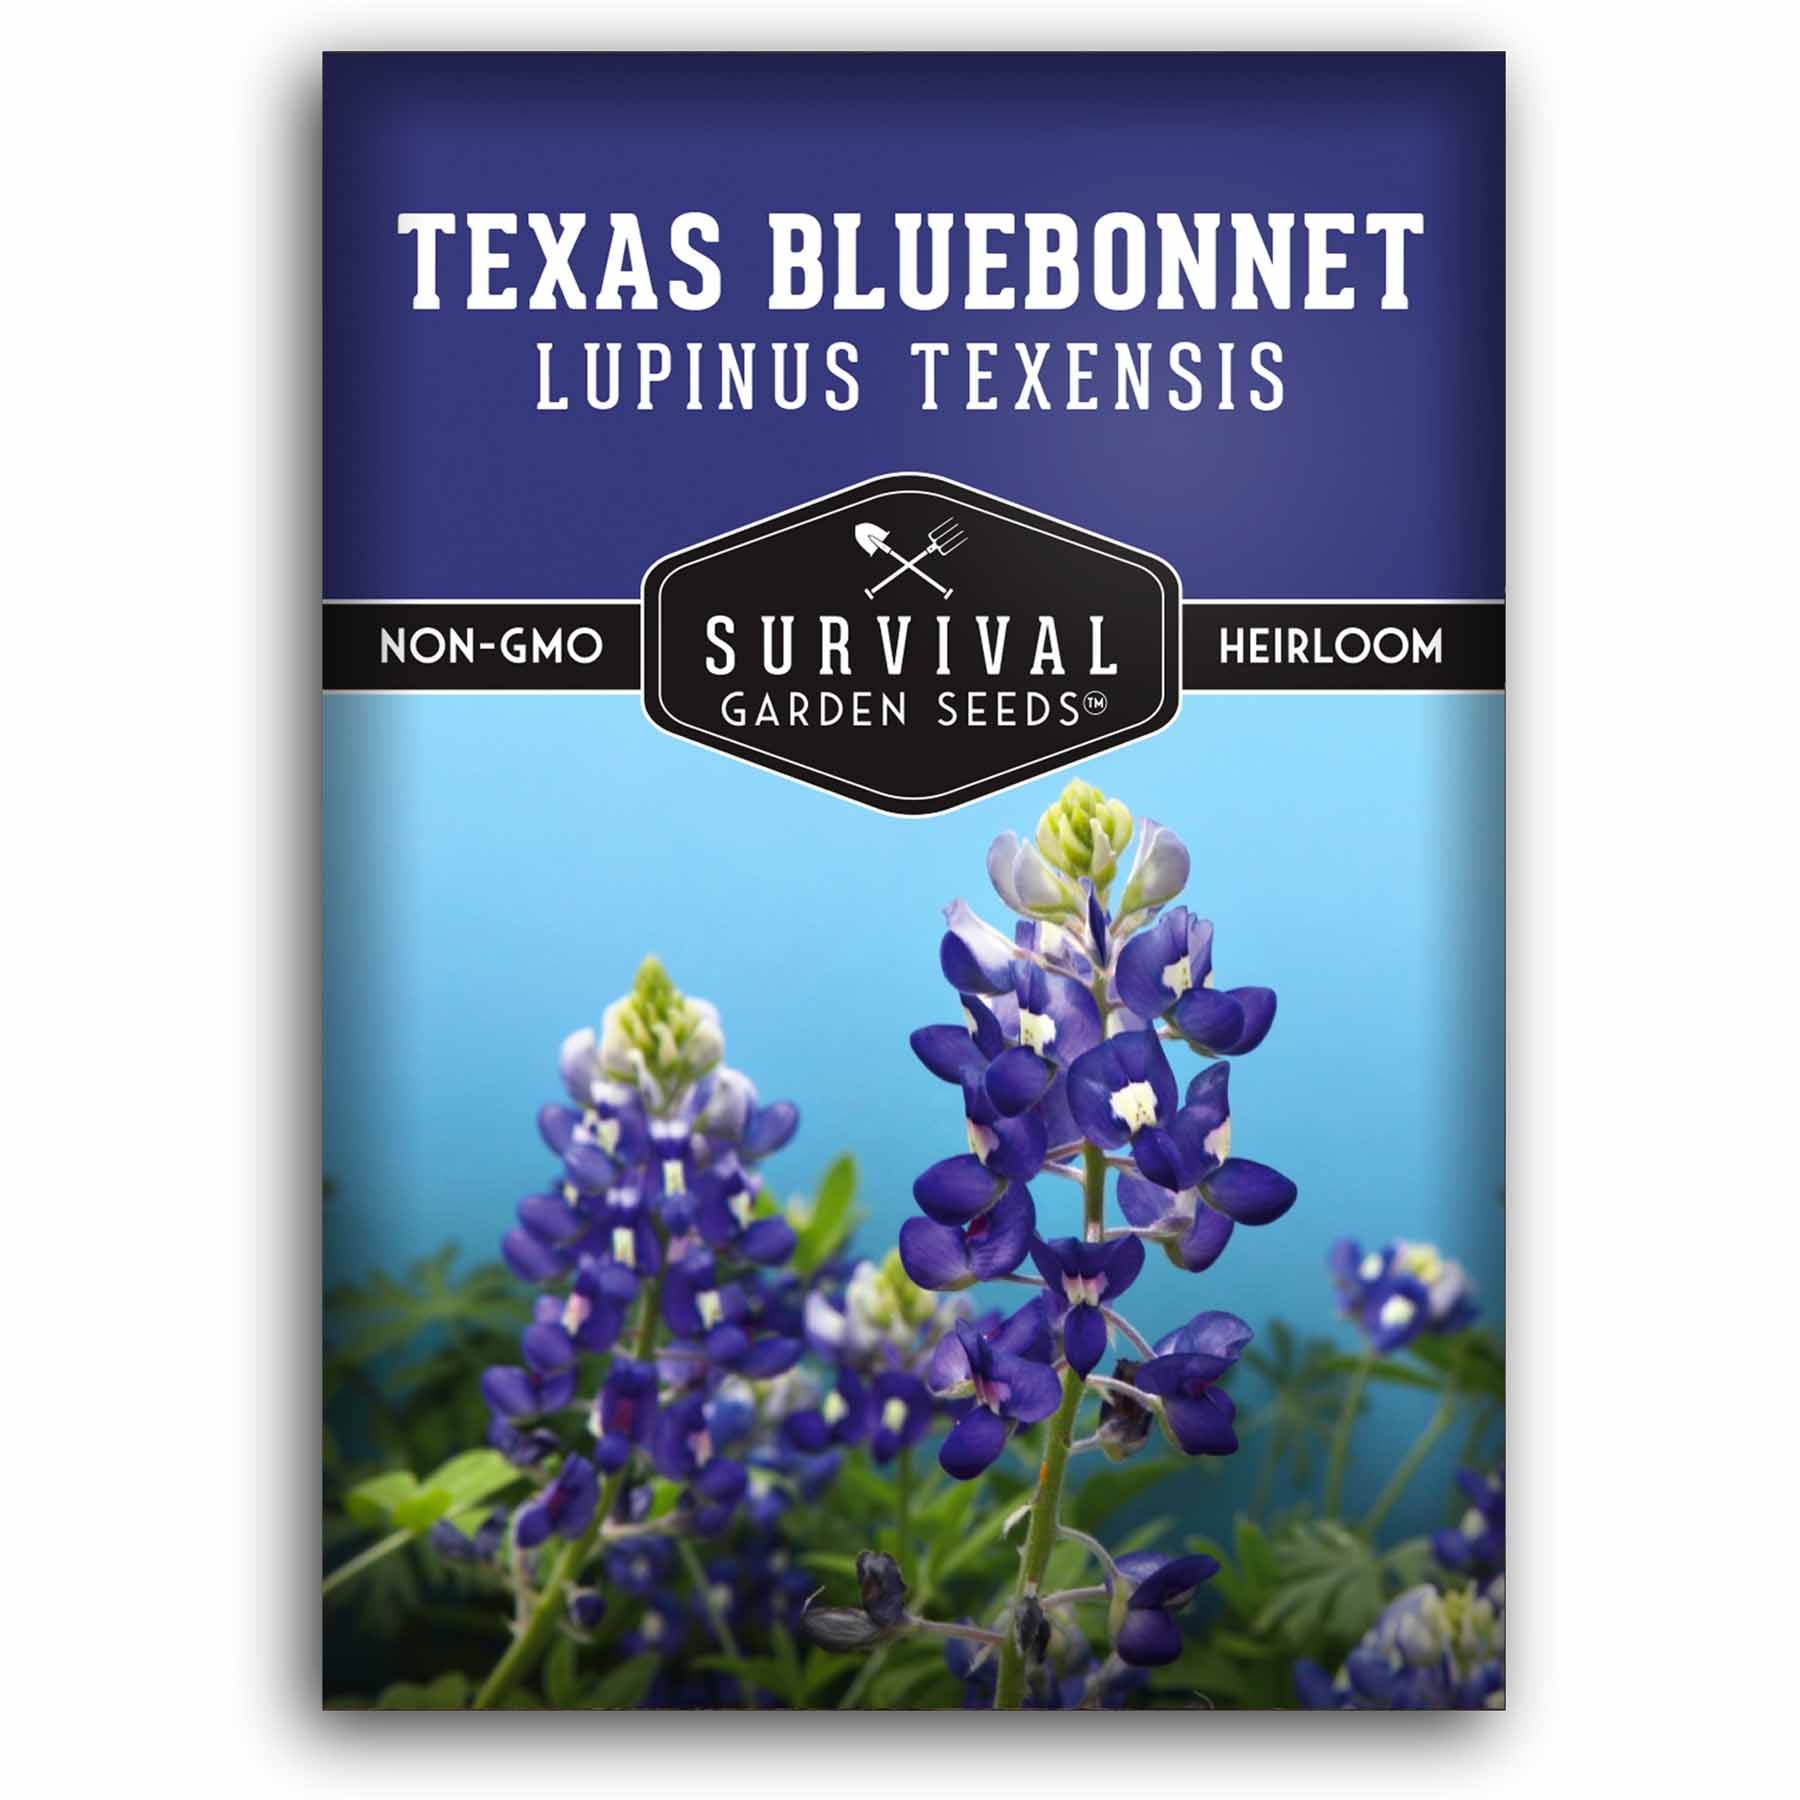 1 packet of Texas Bluebonnet seeds